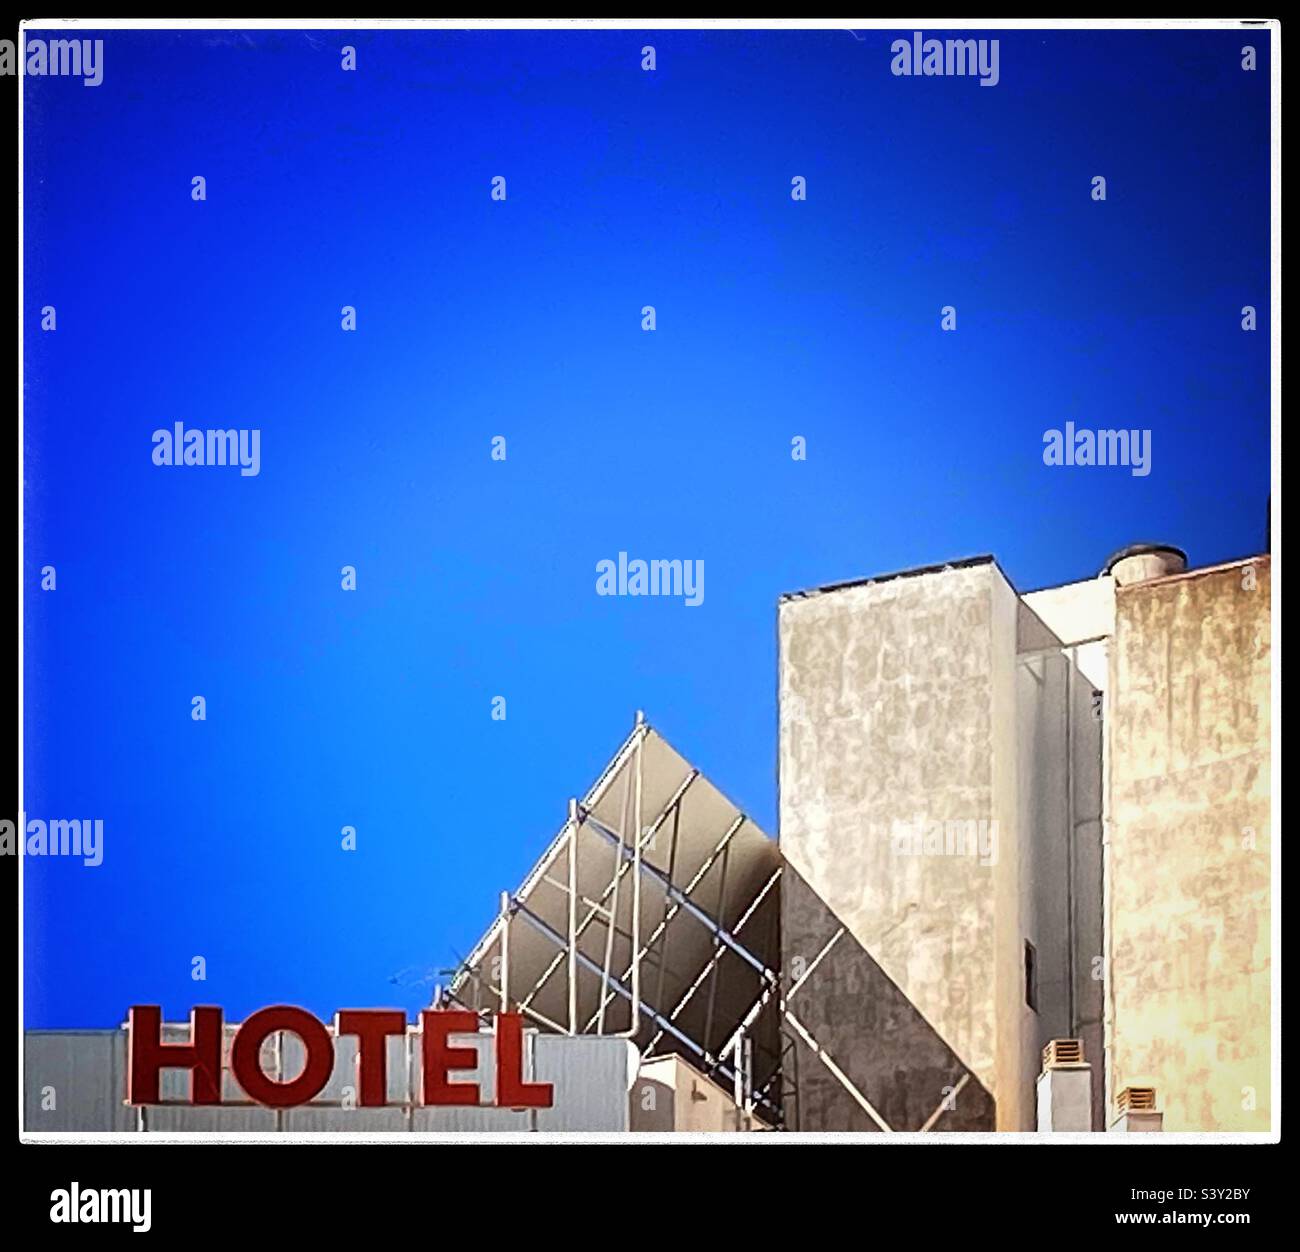 La segnaletica di un hotel è esposta in grassetto lettere rosse sul tetto, adagiato contro un cielo blu senza nuvole. Una serie di pannelli solari catturano l'energia dal sole. Foto Stock